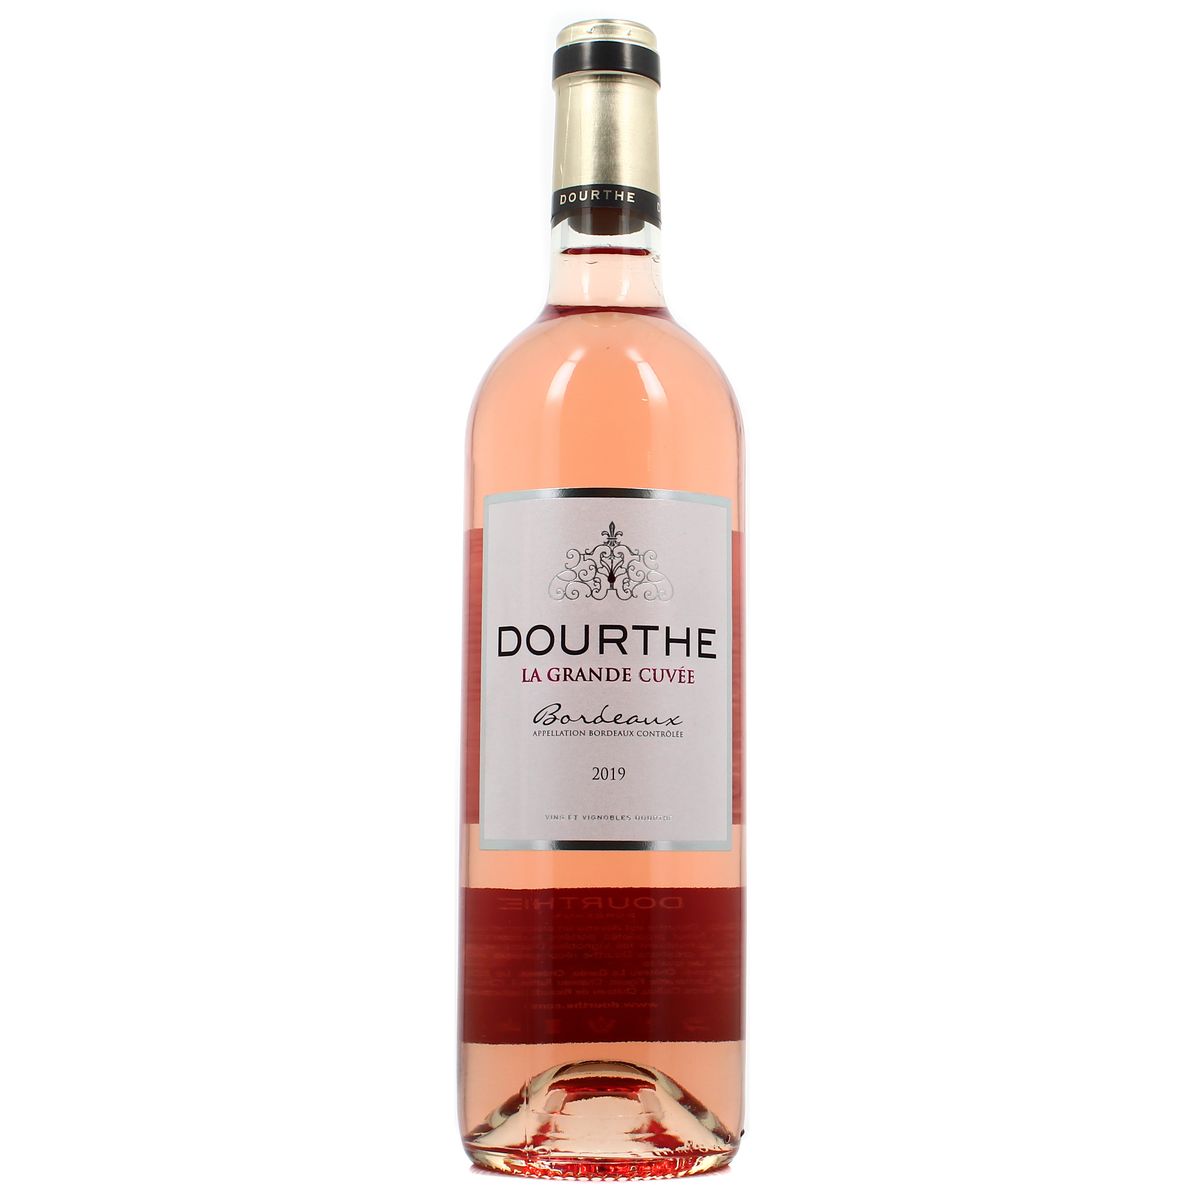 Achat / Vente Bordeaux rosé AOC Maison Dourthe, la grande cuvée, 75cl